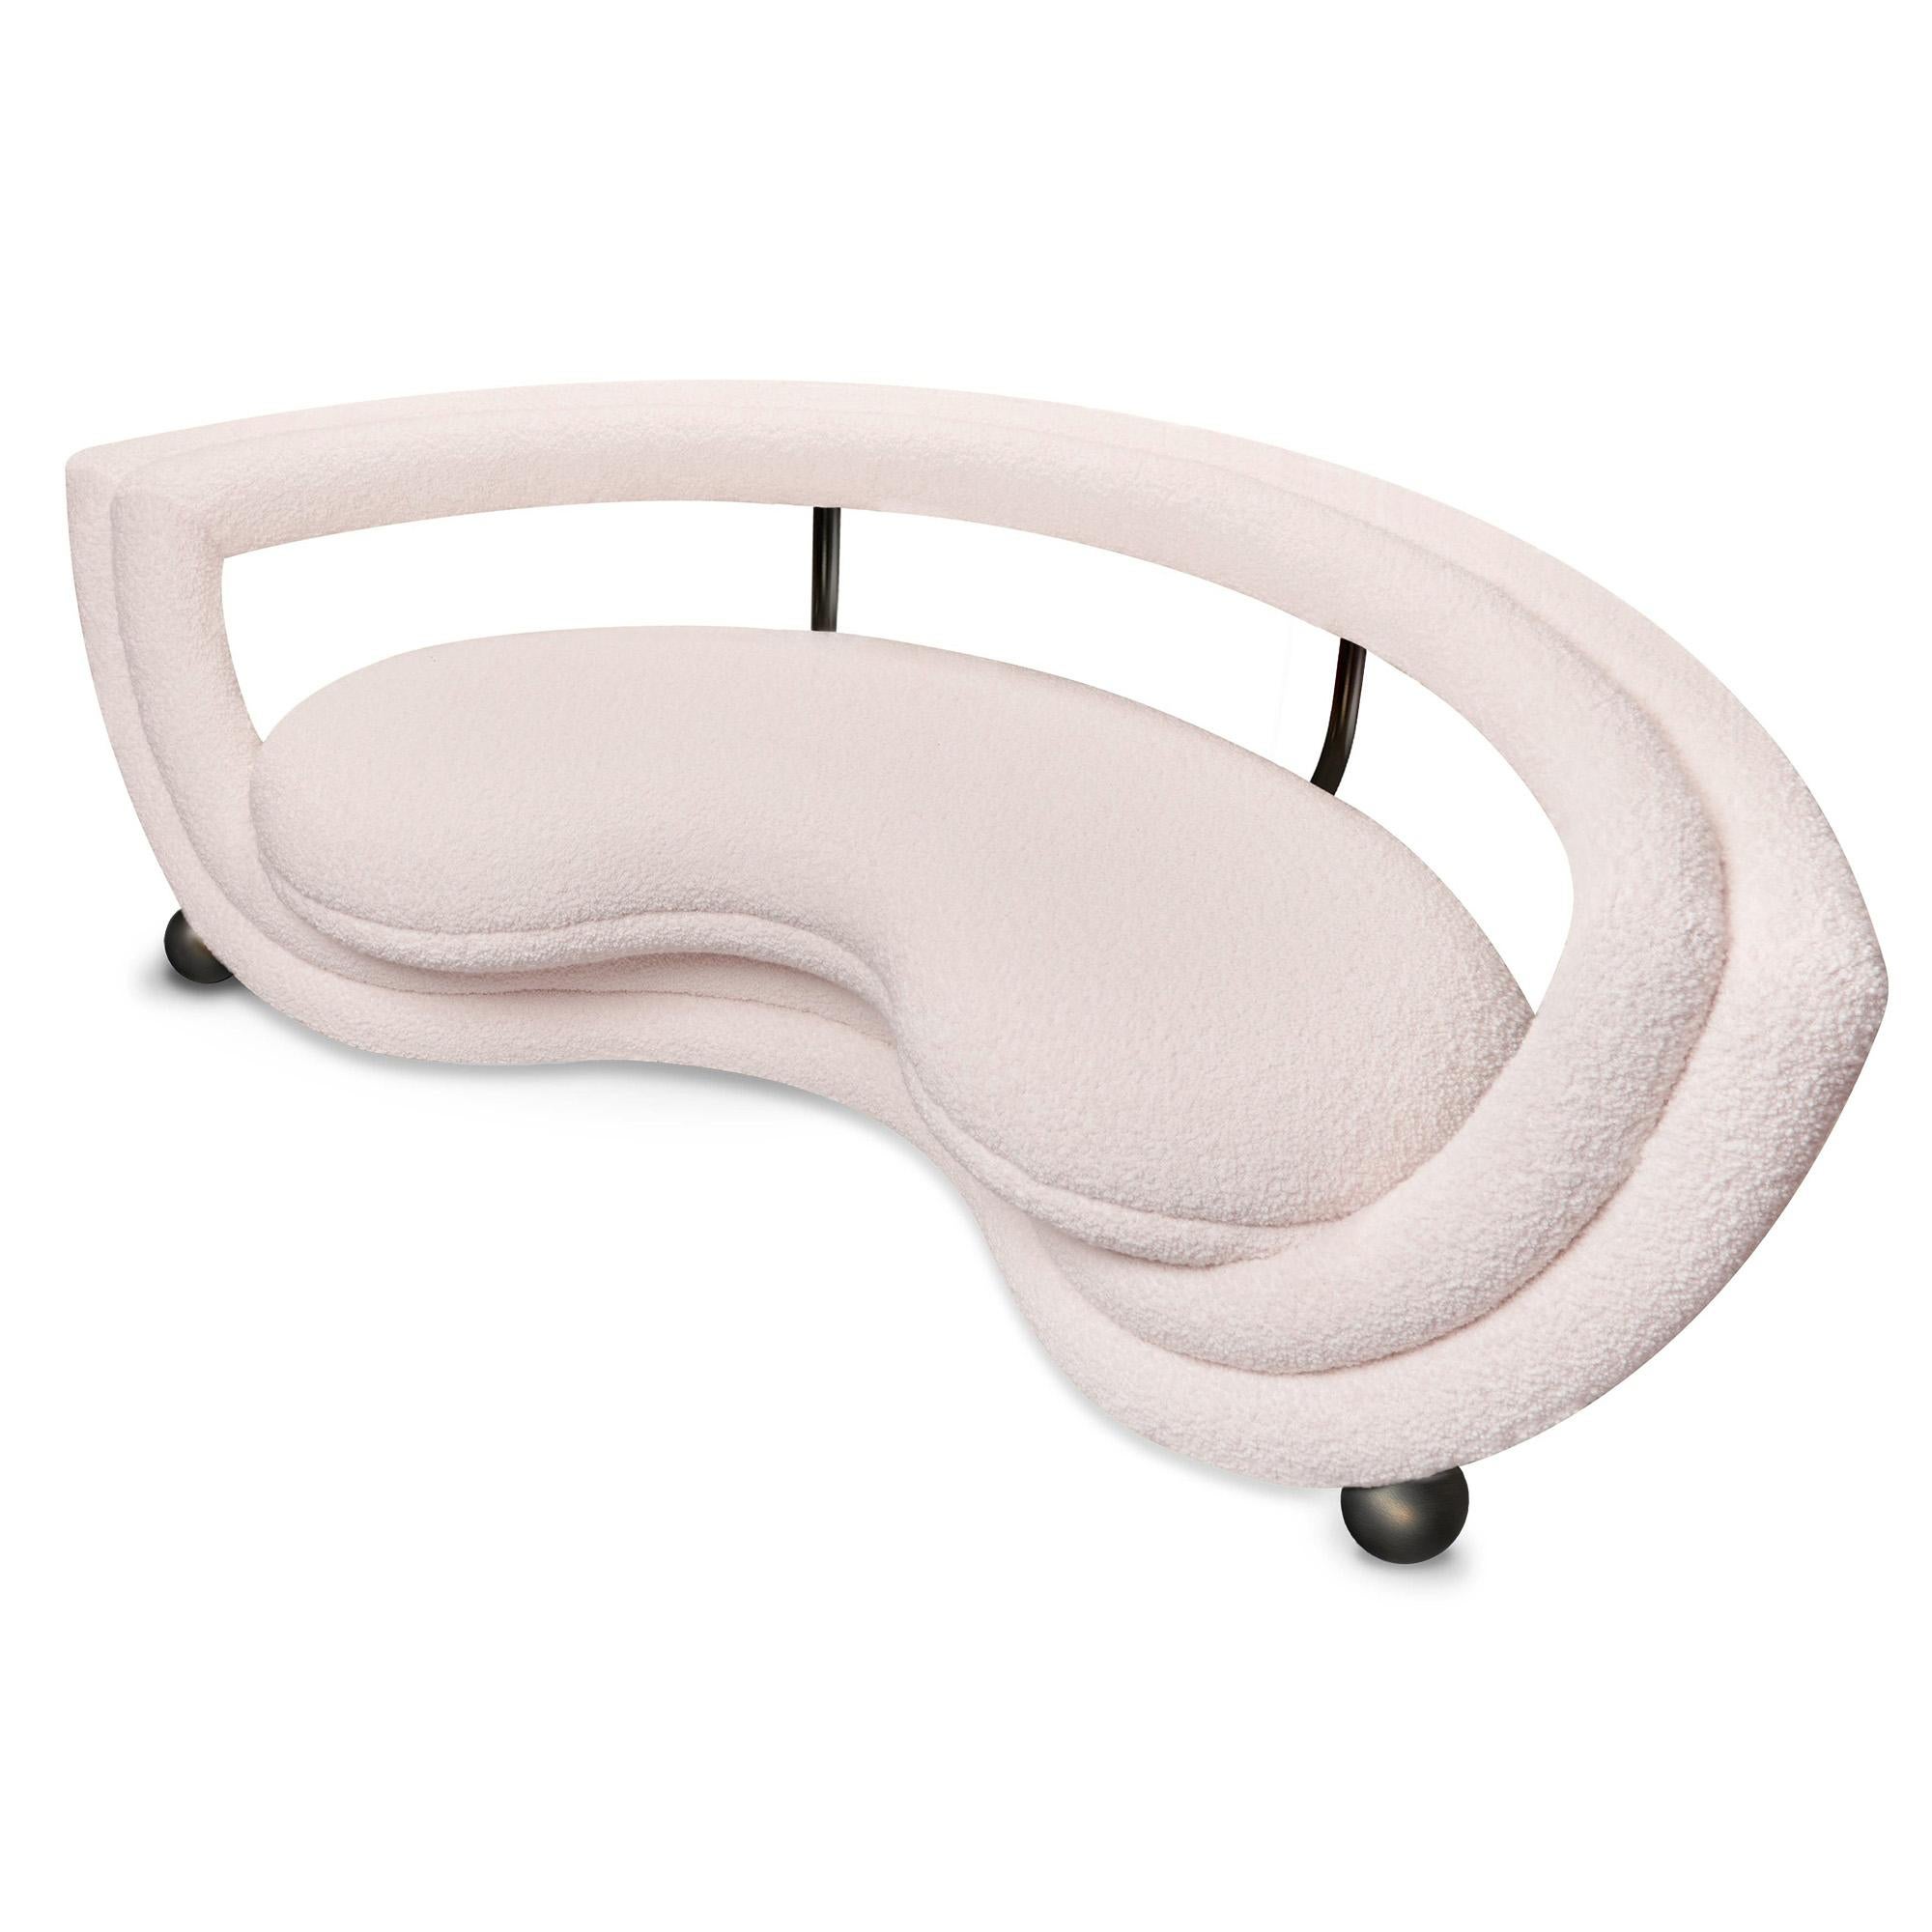 Le canapé et le fauteuil Kissing se caractérisent par deux couches en demi-cercle, l'une portant l'assise en coupe et l'autre formant le dossier. Toutes les lignes sont recouvertes d'un rembourrage souple, à l'exception des pieds et des coupelles en